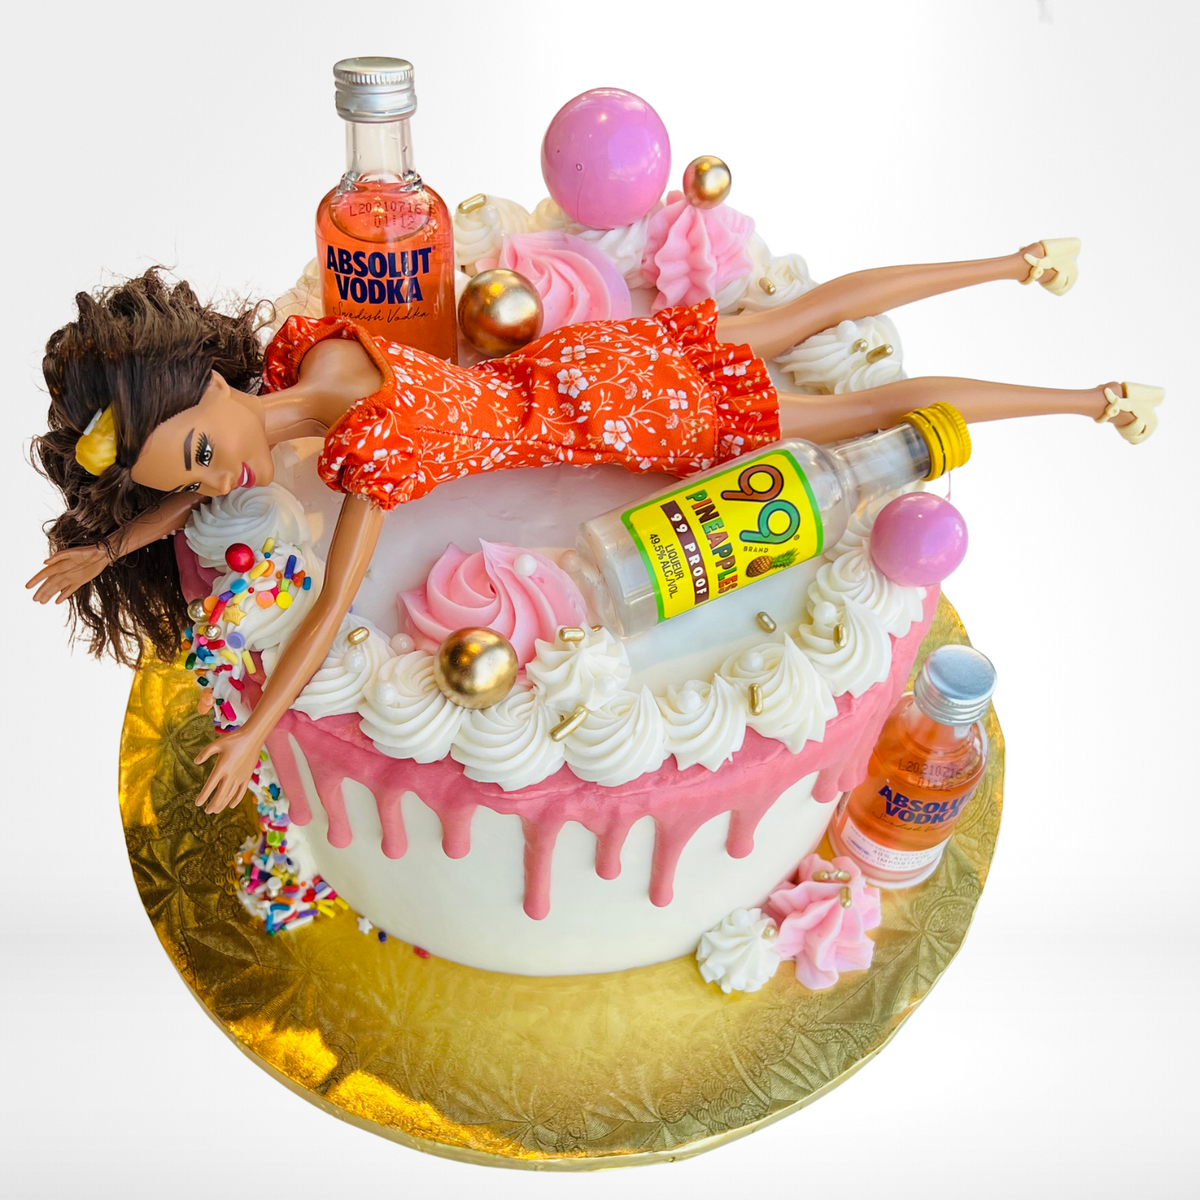 Princess Barbie (doll) Birthday Cake - Eve's Cakes